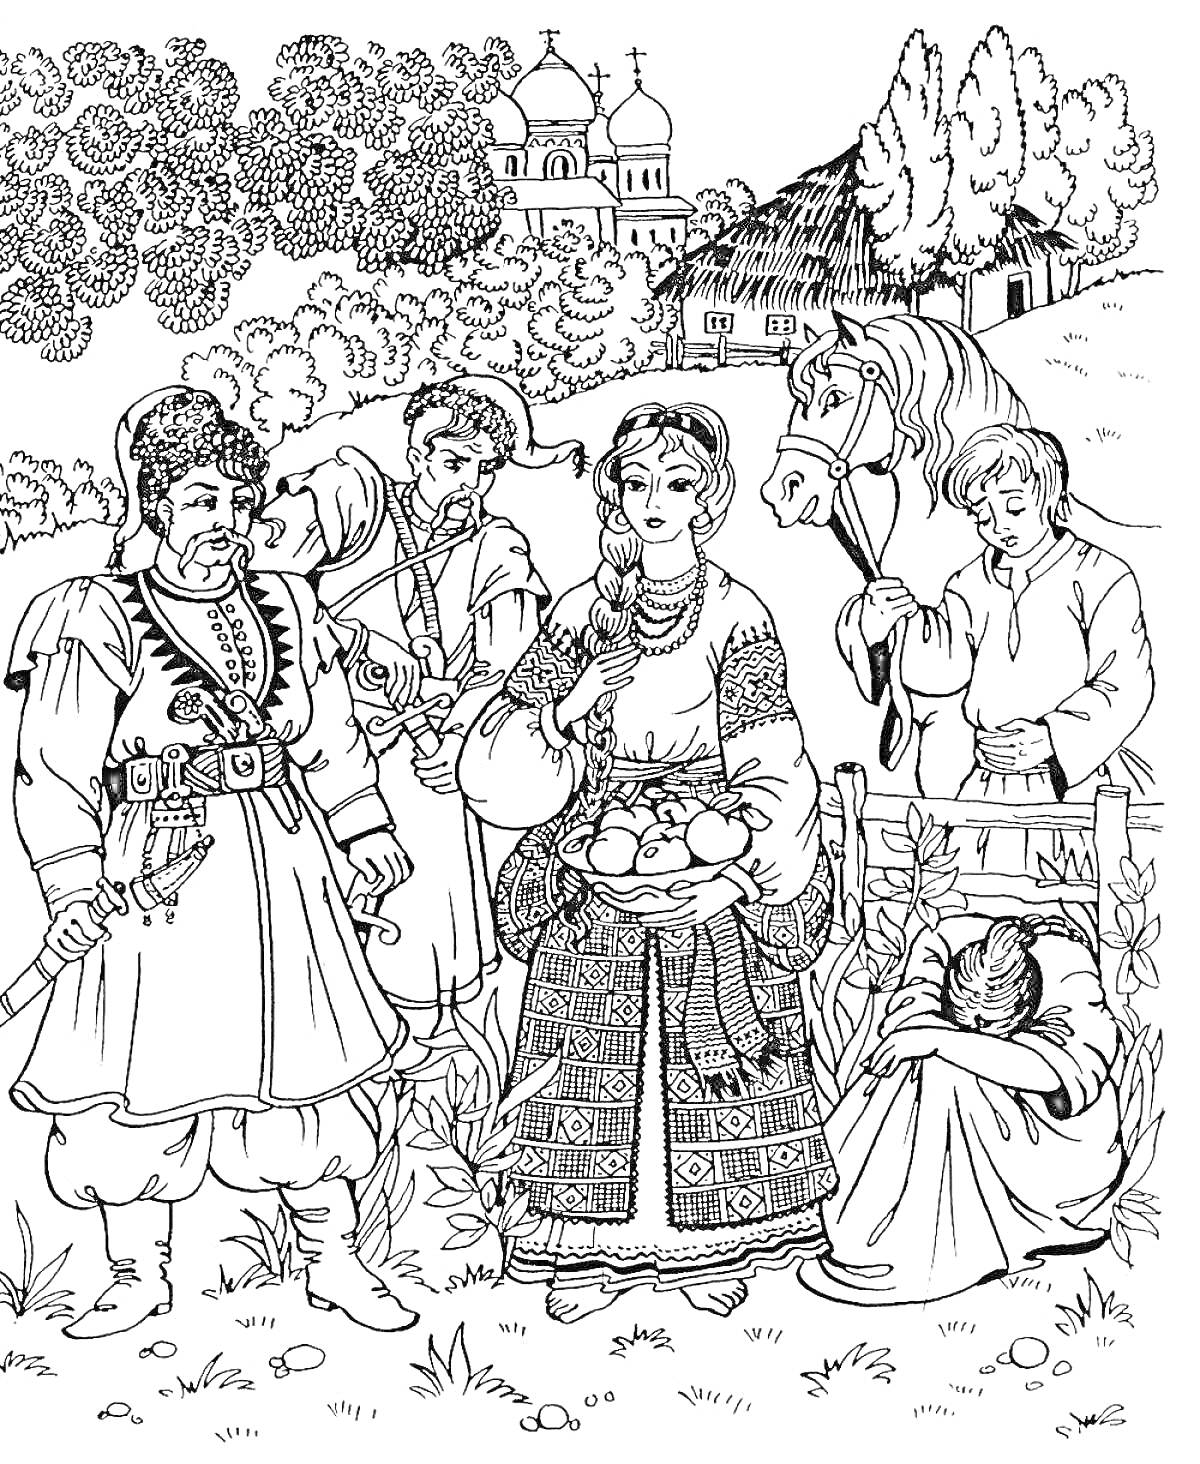 Казак с саблей, женщина с хлебом, мальчик с лошадью, отдыхающий человек, деревья, церковь и дом на фоне